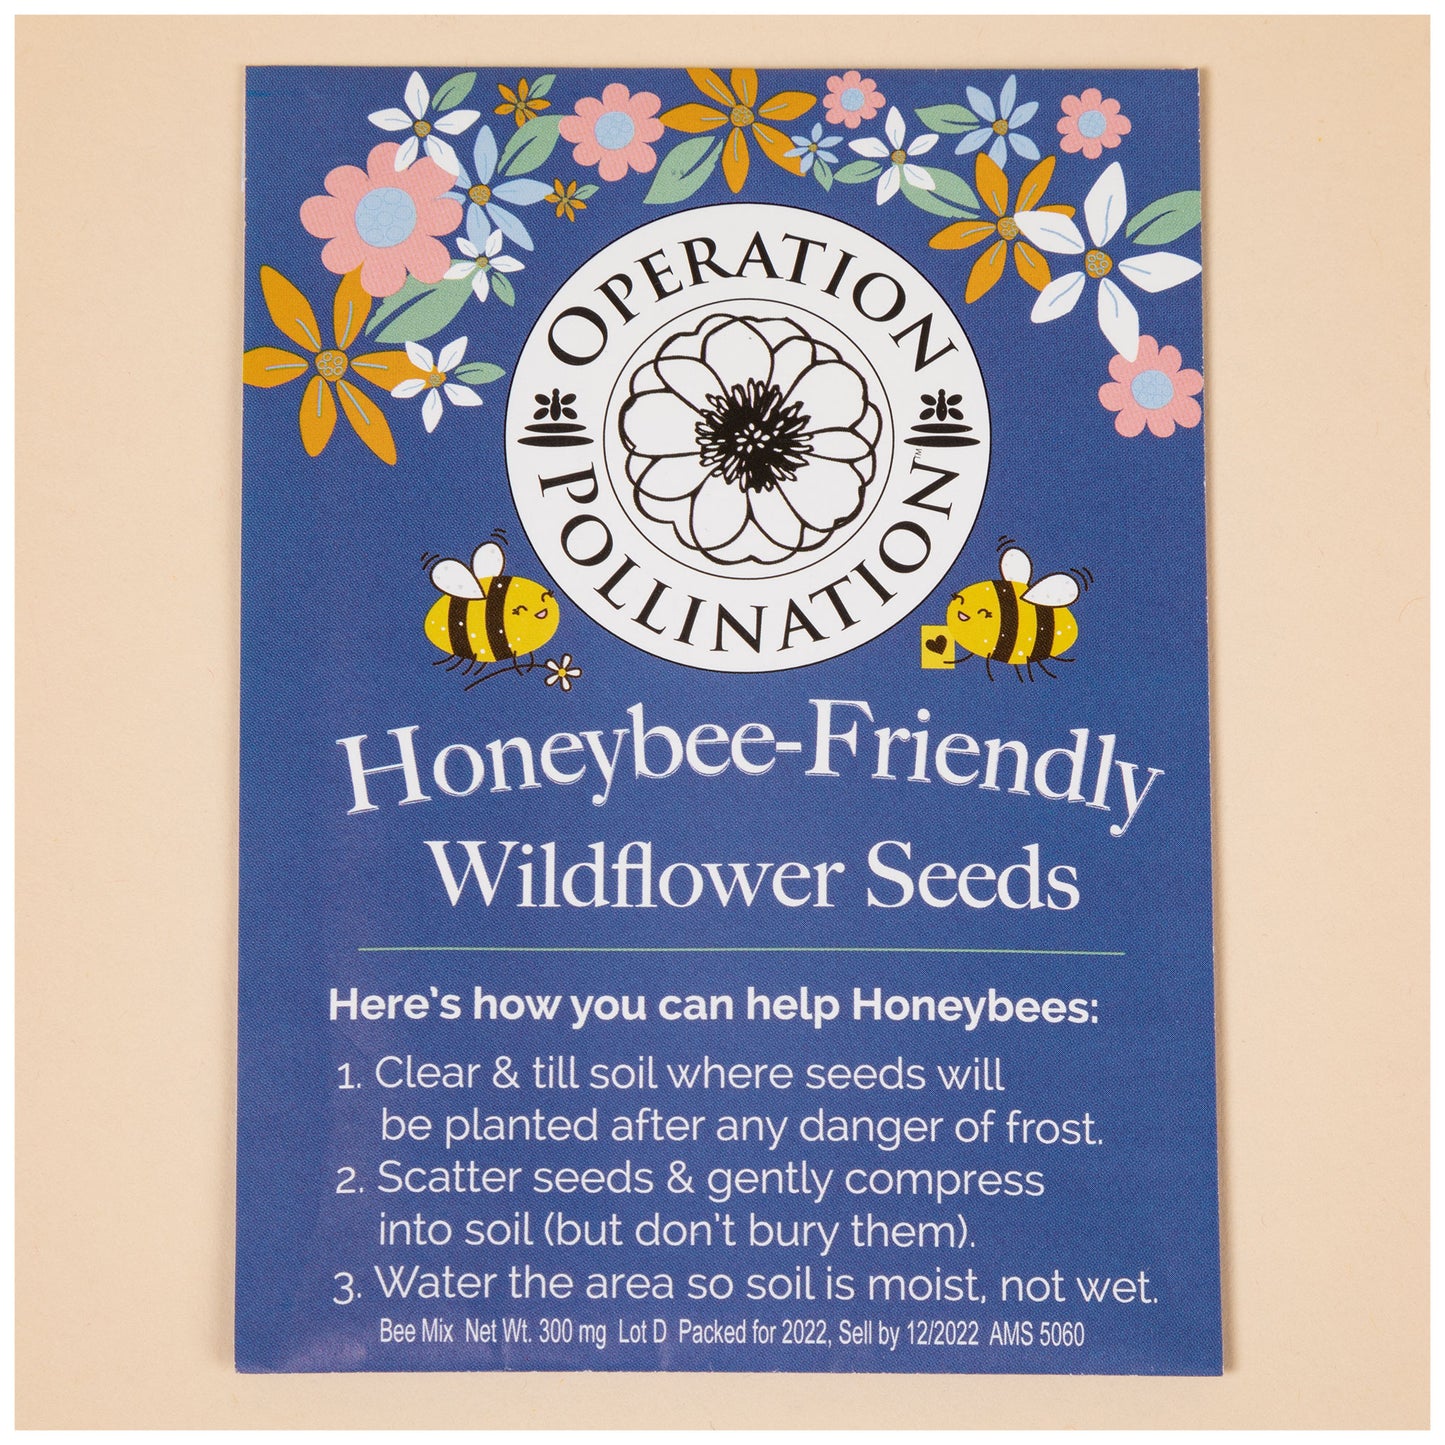 Honeybee-Friendly Wildflower Seeds